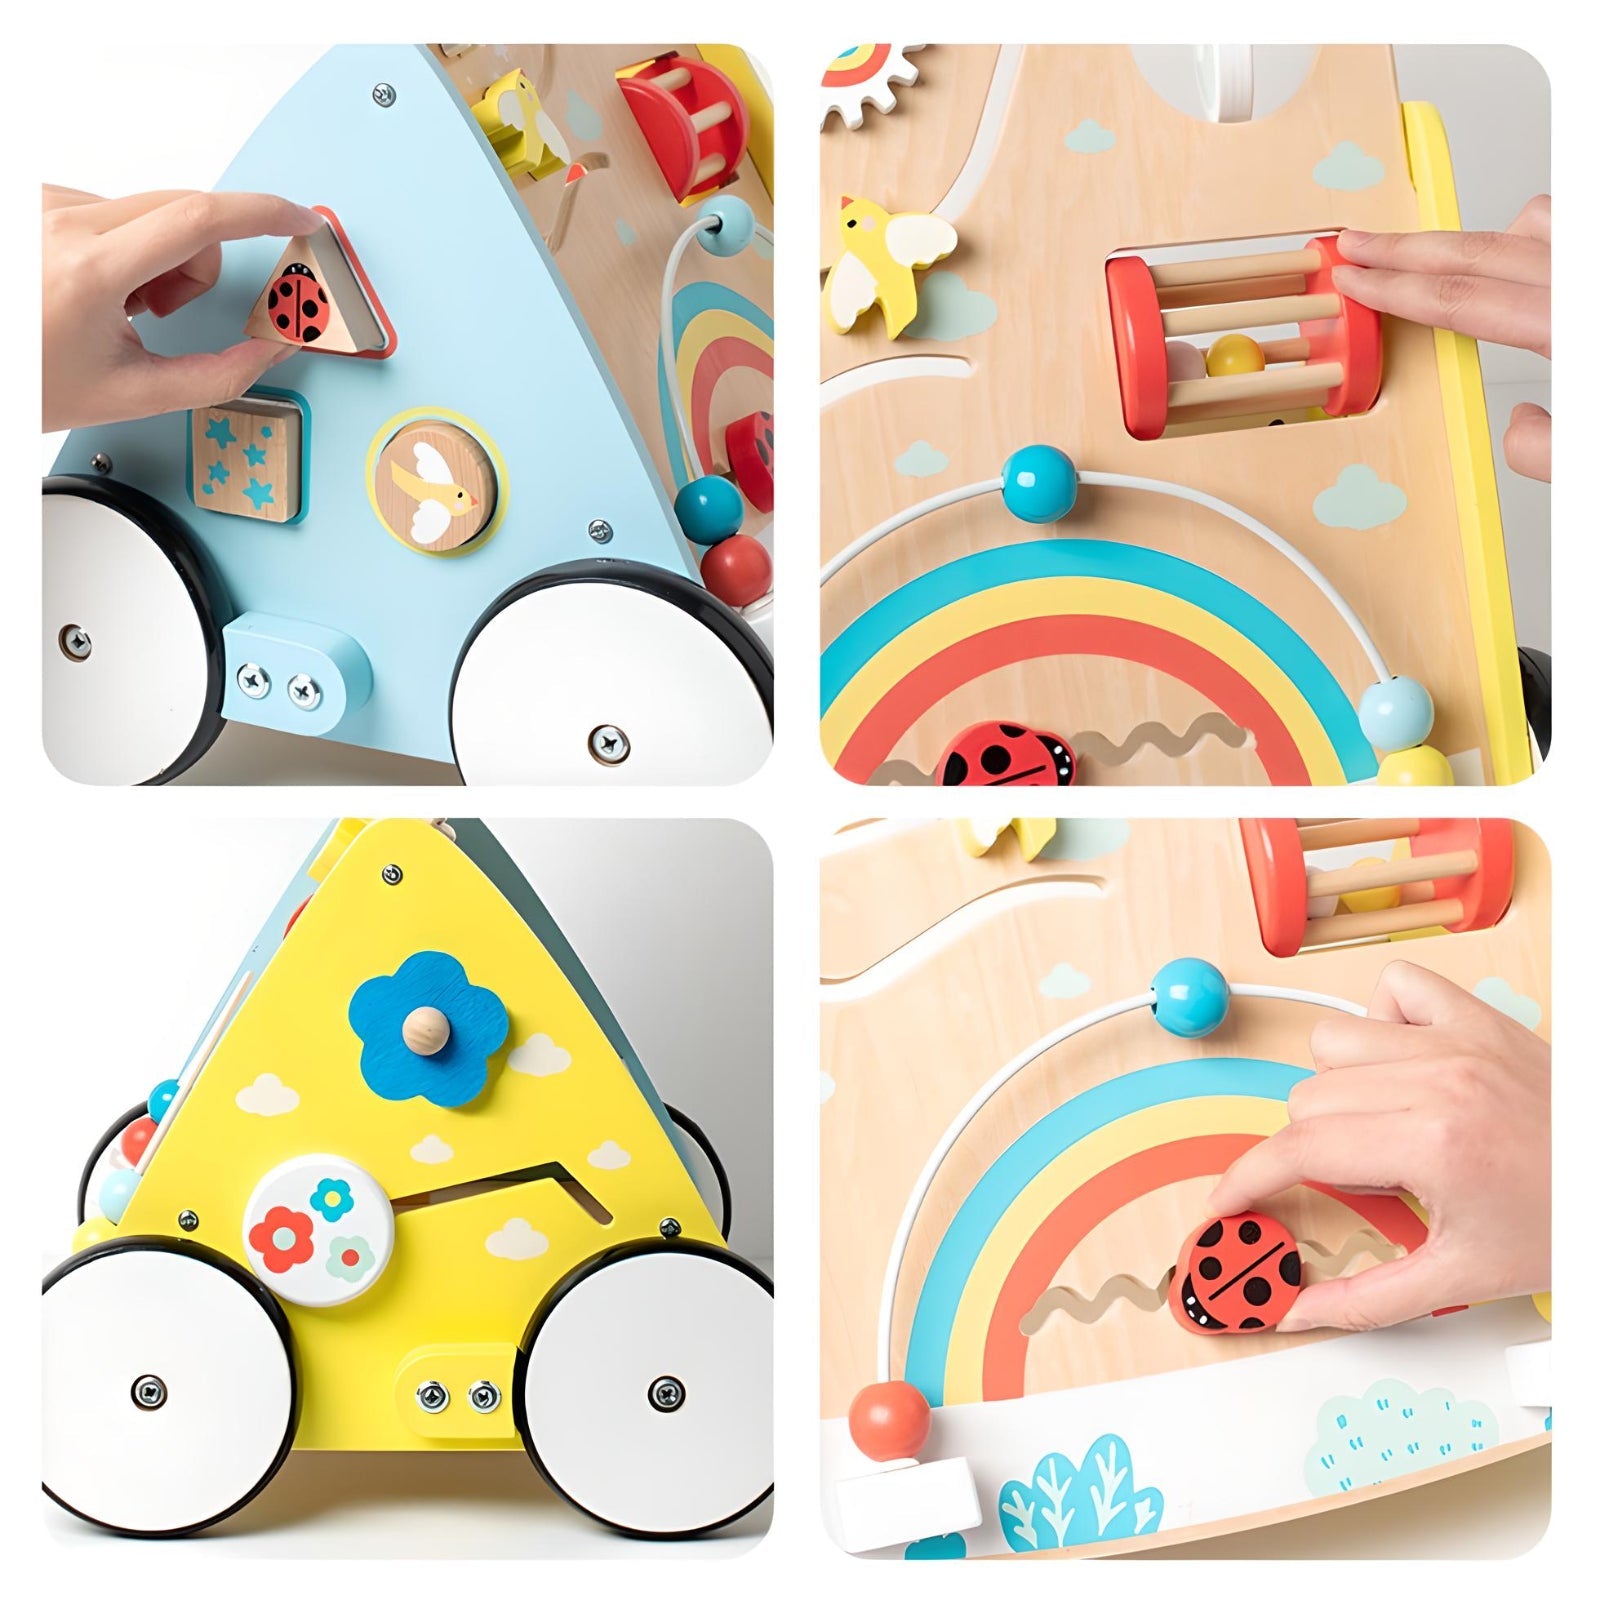 Buy Das Holz-Toddler-Auto mit pädagogischer Spielzeugplatte - Ein  vielseitiges Spielzeug für Kleinkinder! Online